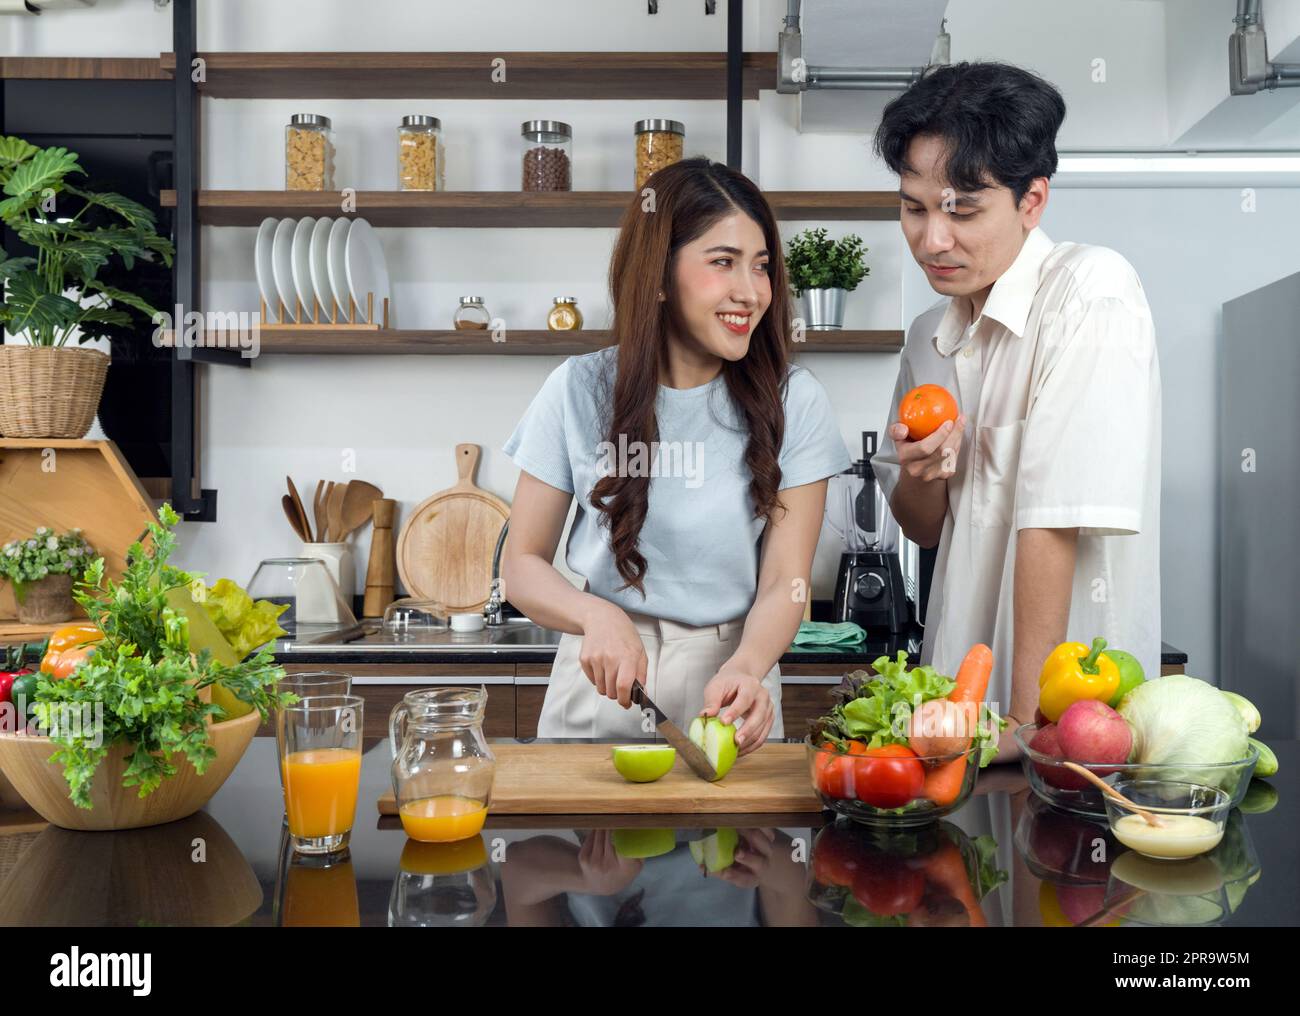 Un couple asiatique passe du temps ensemble dans la cuisine. Une jeune femme coupe une pomme verte sur une planche à découper en bois tandis que son petit ami se tient à côté d'elle avec une orange dans la main. Le jus de fruits est sur le comptoir. Banque D'Images